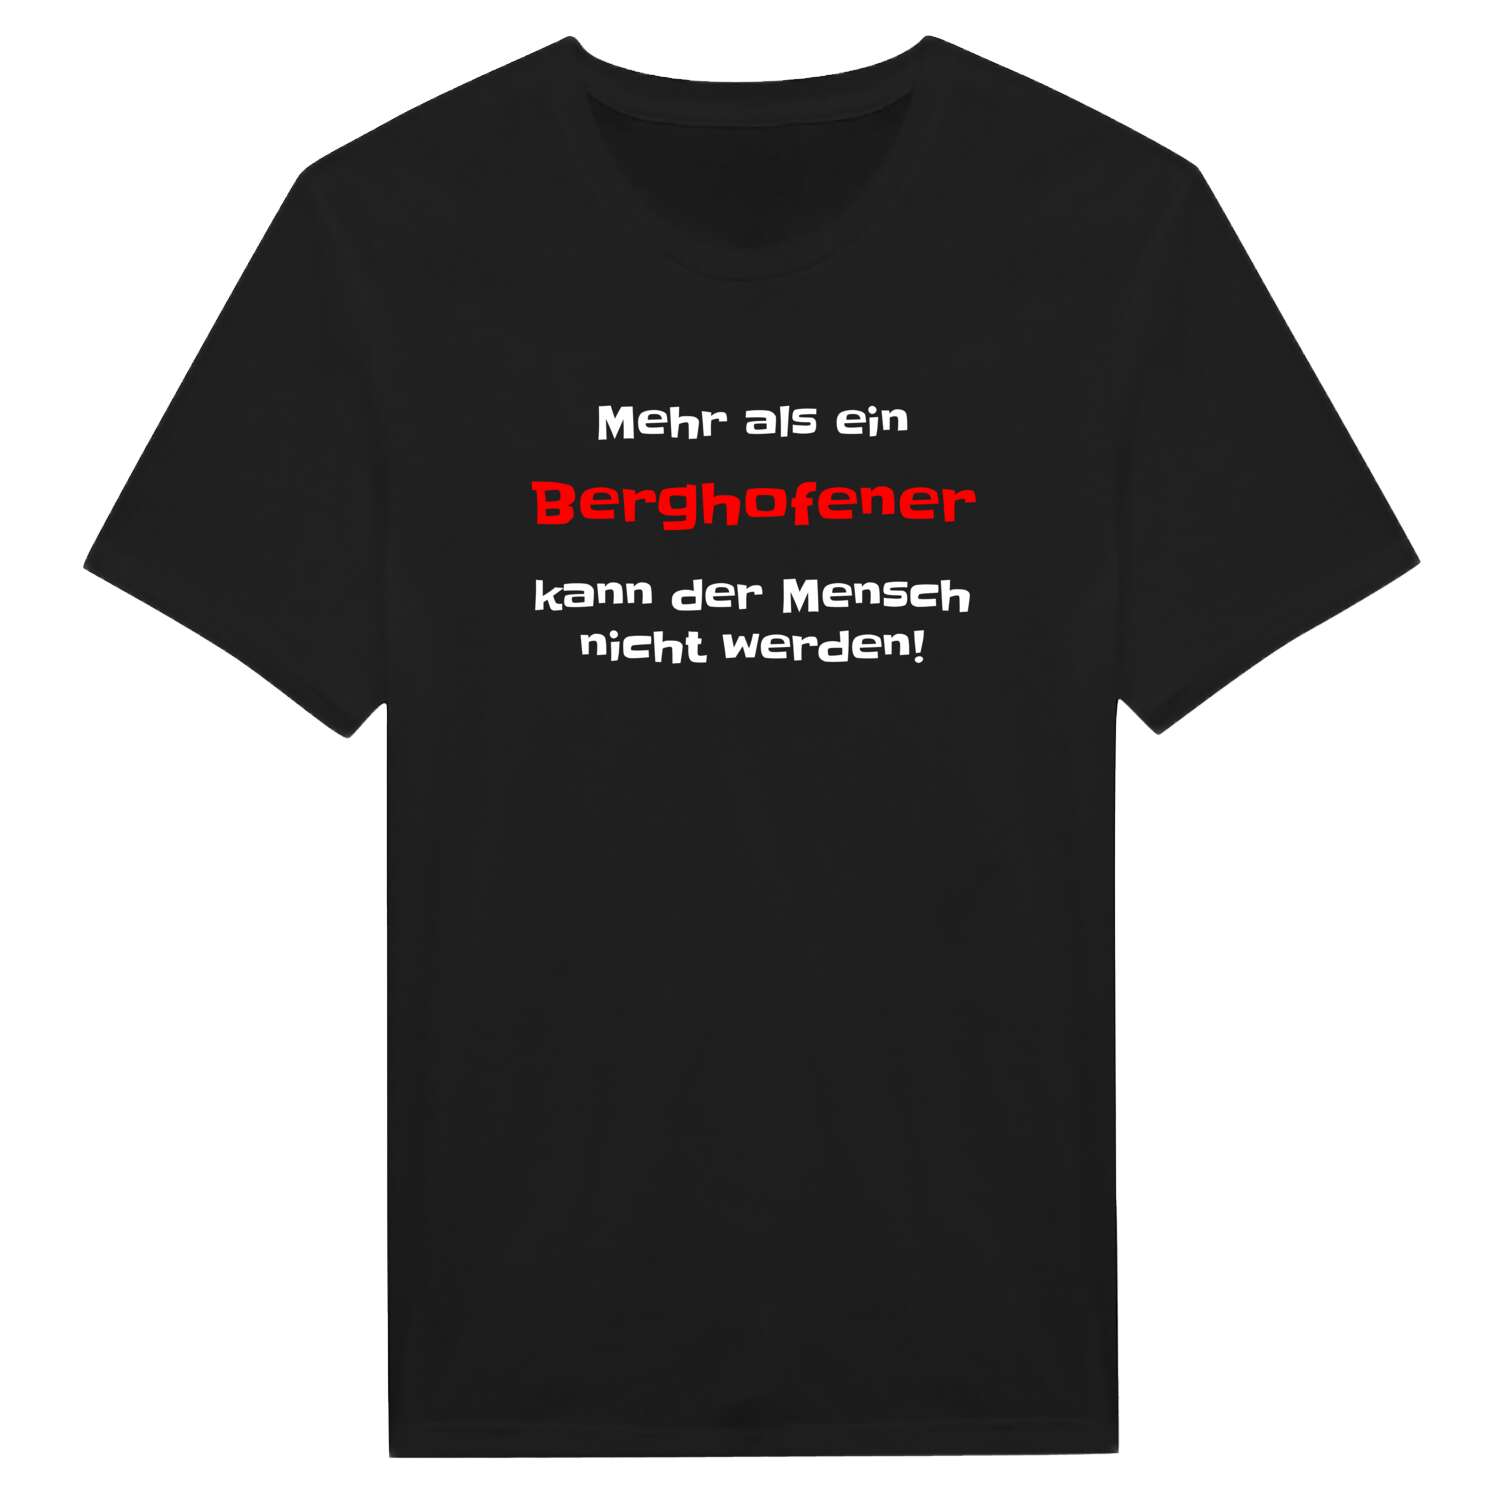 Berghofen T-Shirt »Mehr als ein«